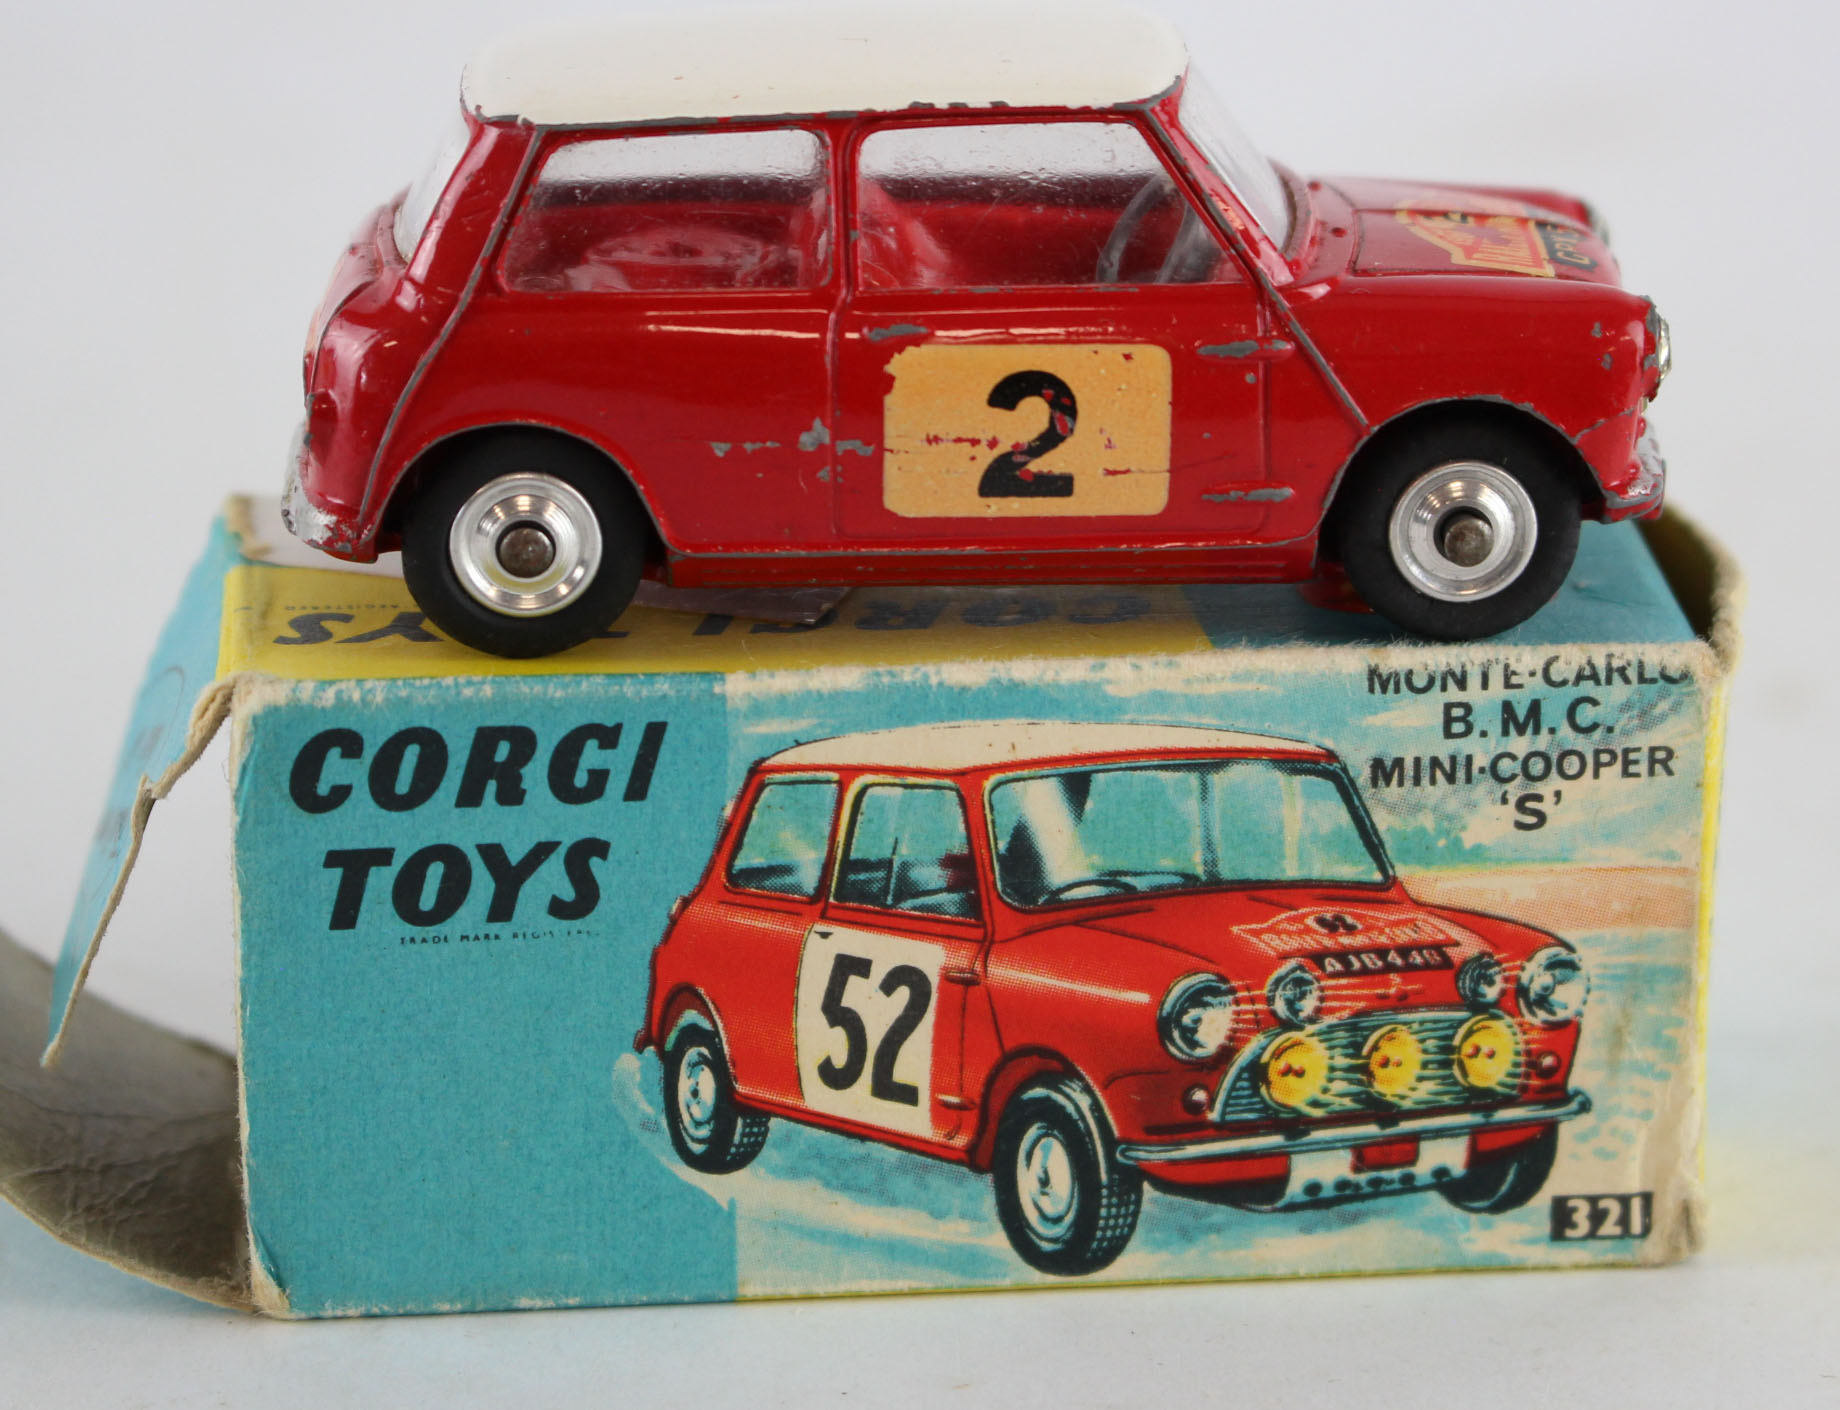 Corgi Toys, no 321 'Monte Carlo B.M.C. Mini Cooper S', contained in original box, 'Autographed'